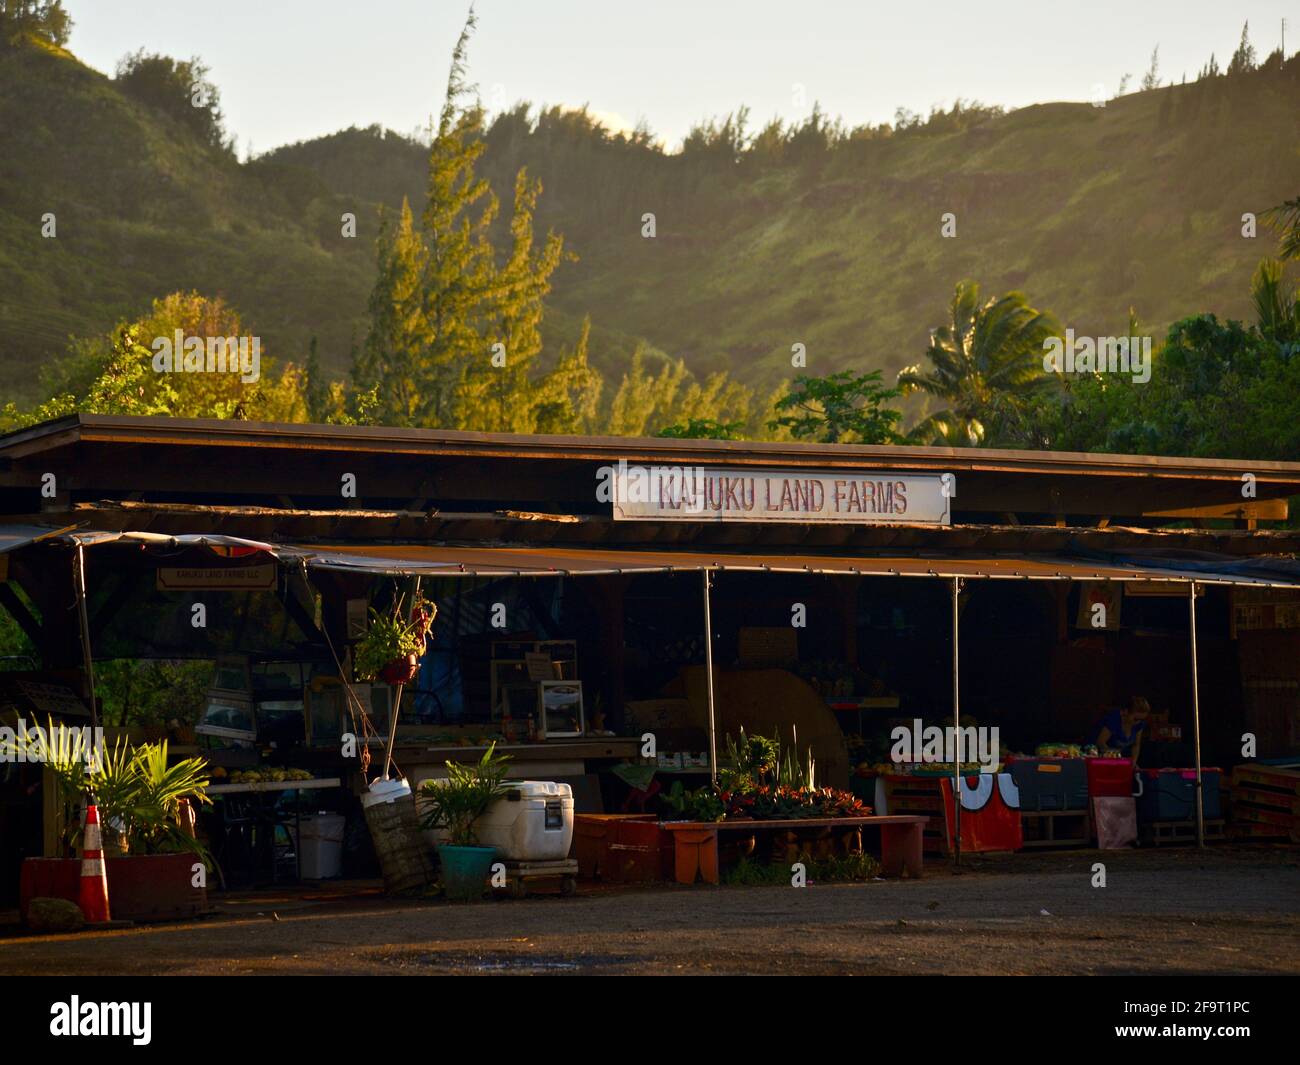 Des jeunes couples magasinent au coucher du soleil sur le stand de marché de la ferme situé sur le bord de la route à Kahuku Land Farms, sur la rive nord d'Oahu, près de Turtle Bay Resort, Hawaii, États-Unis Banque D'Images